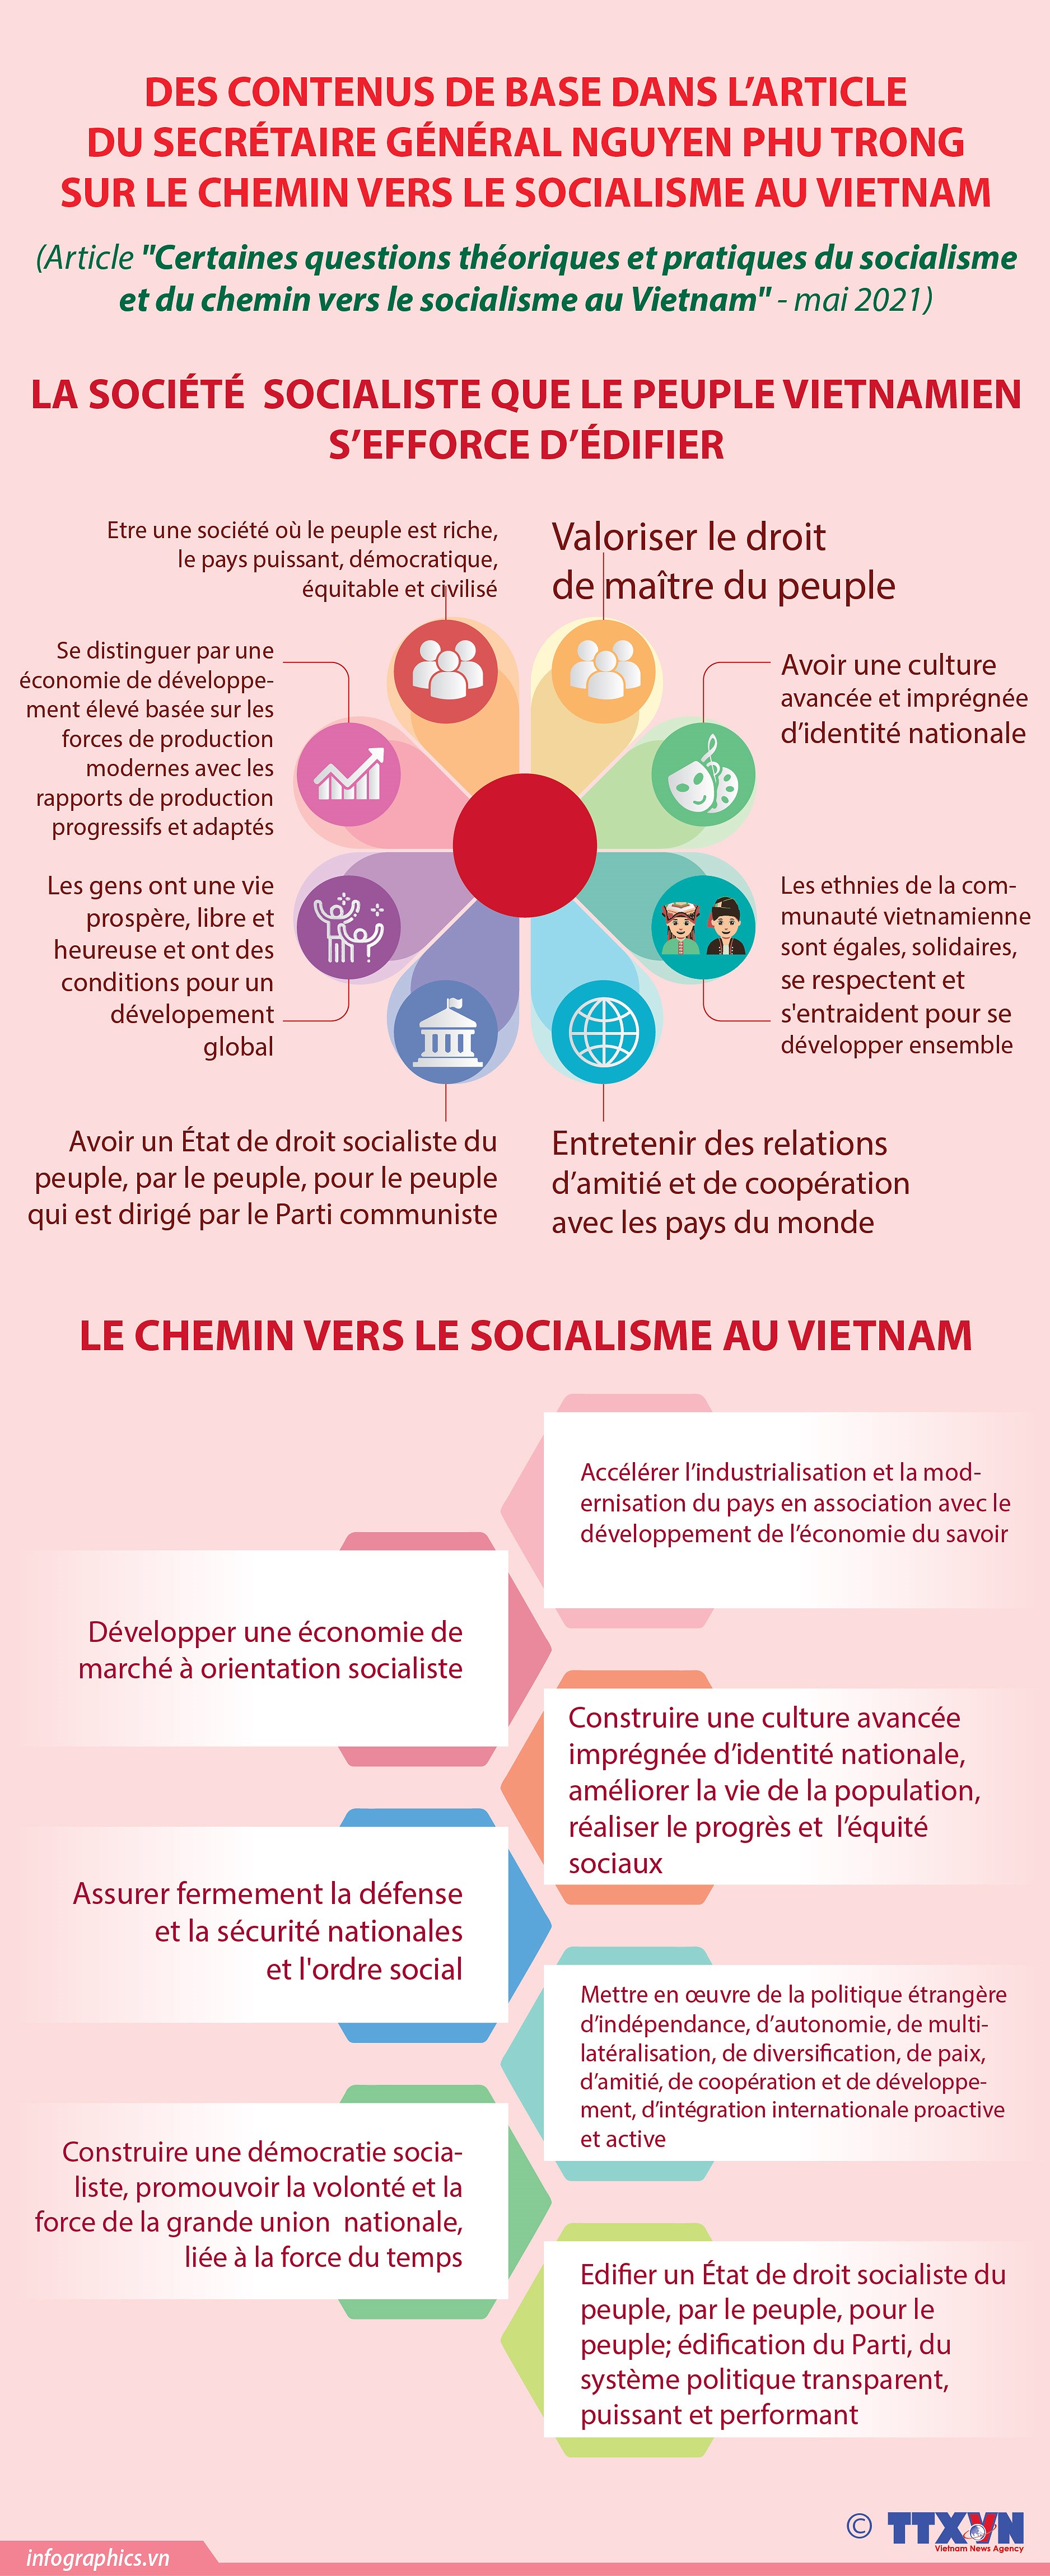 Questions theoriques et pratiques sur le socialisme et la voie vers le socialisme au Vietnam hinh anh 7